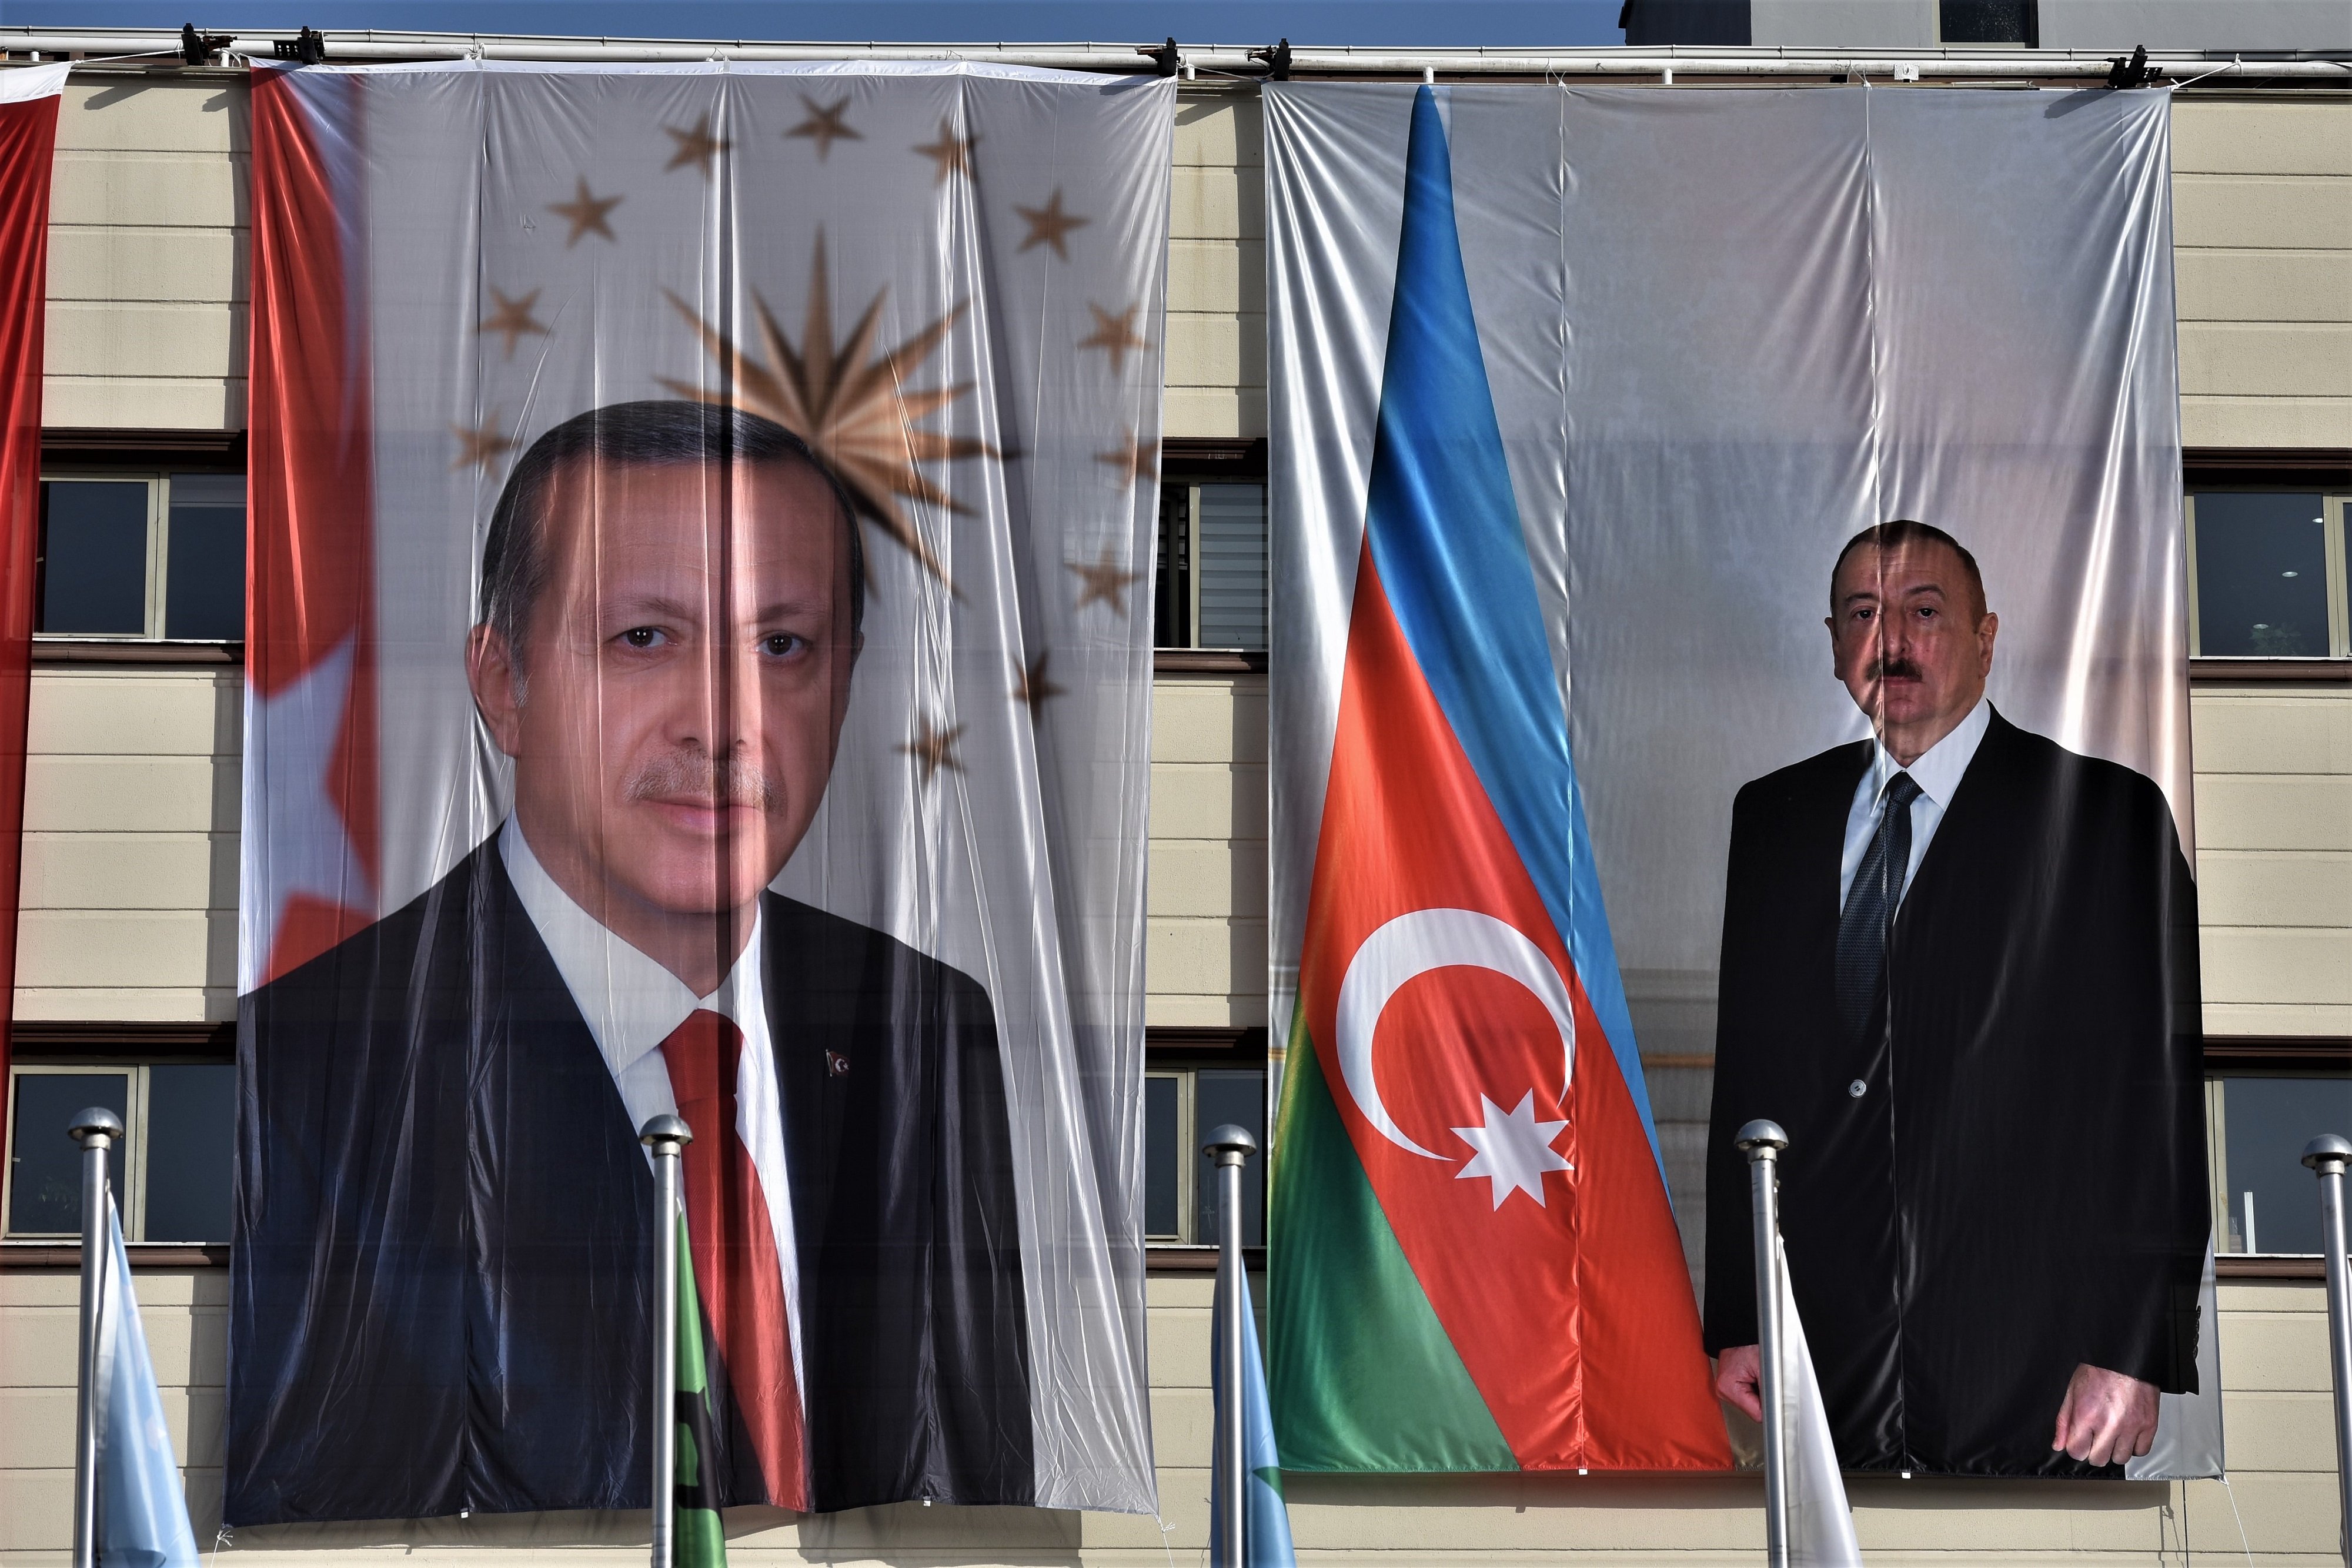 İlham Əliyev erdogan turquia azerbadjan - europa press